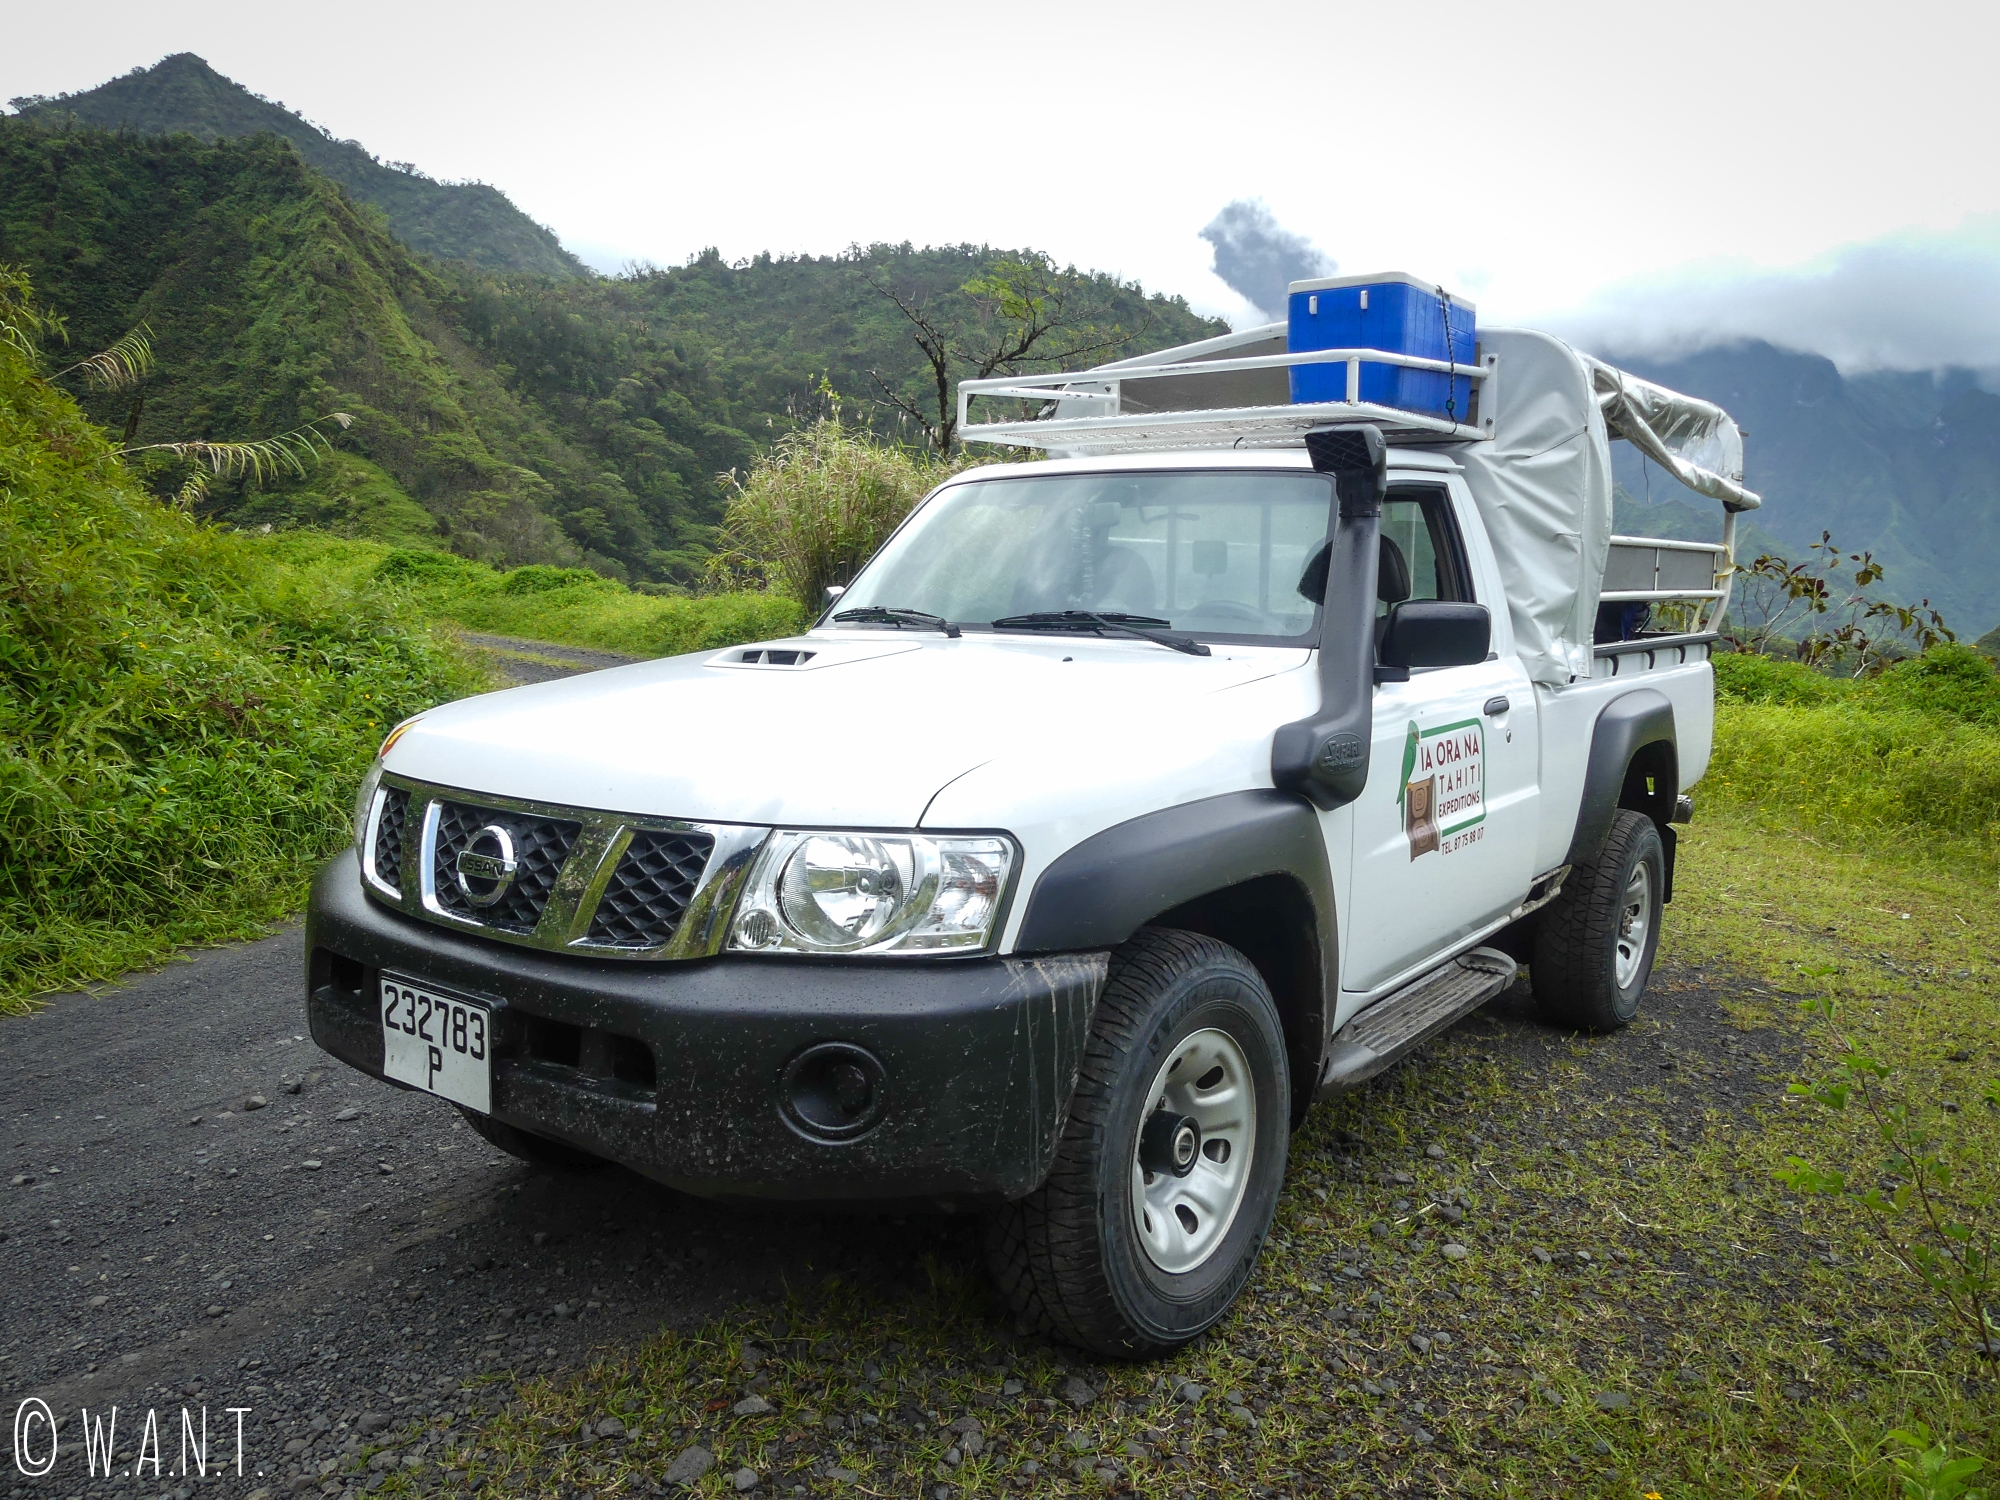 Notre pick-up pour visiter la vallée de la Papenoo à Tahiti